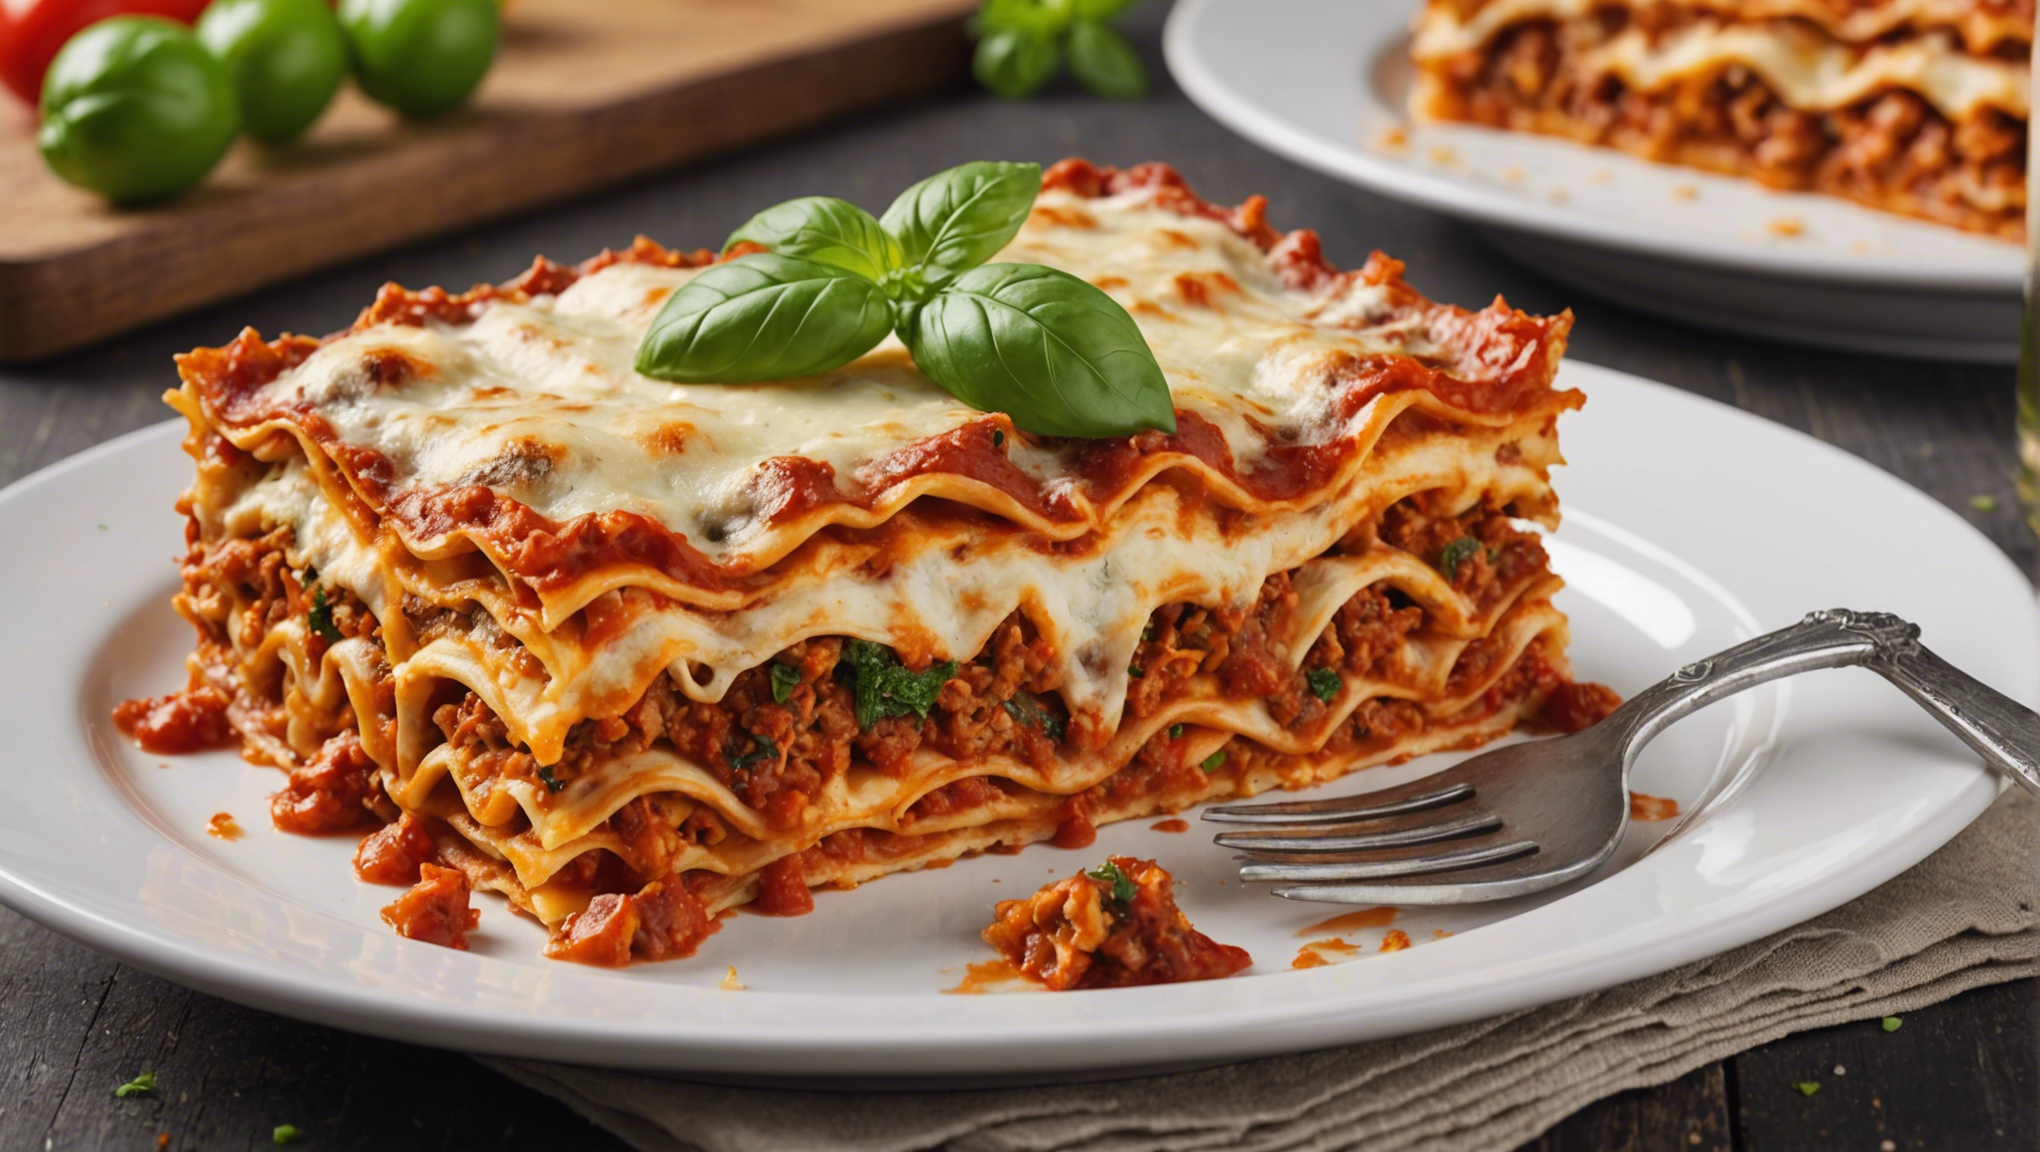 découvrez les secrets des meilleures lasagnes végétariennes riches en goût : ingrédients clés et astuces pour une recette savoureuse.